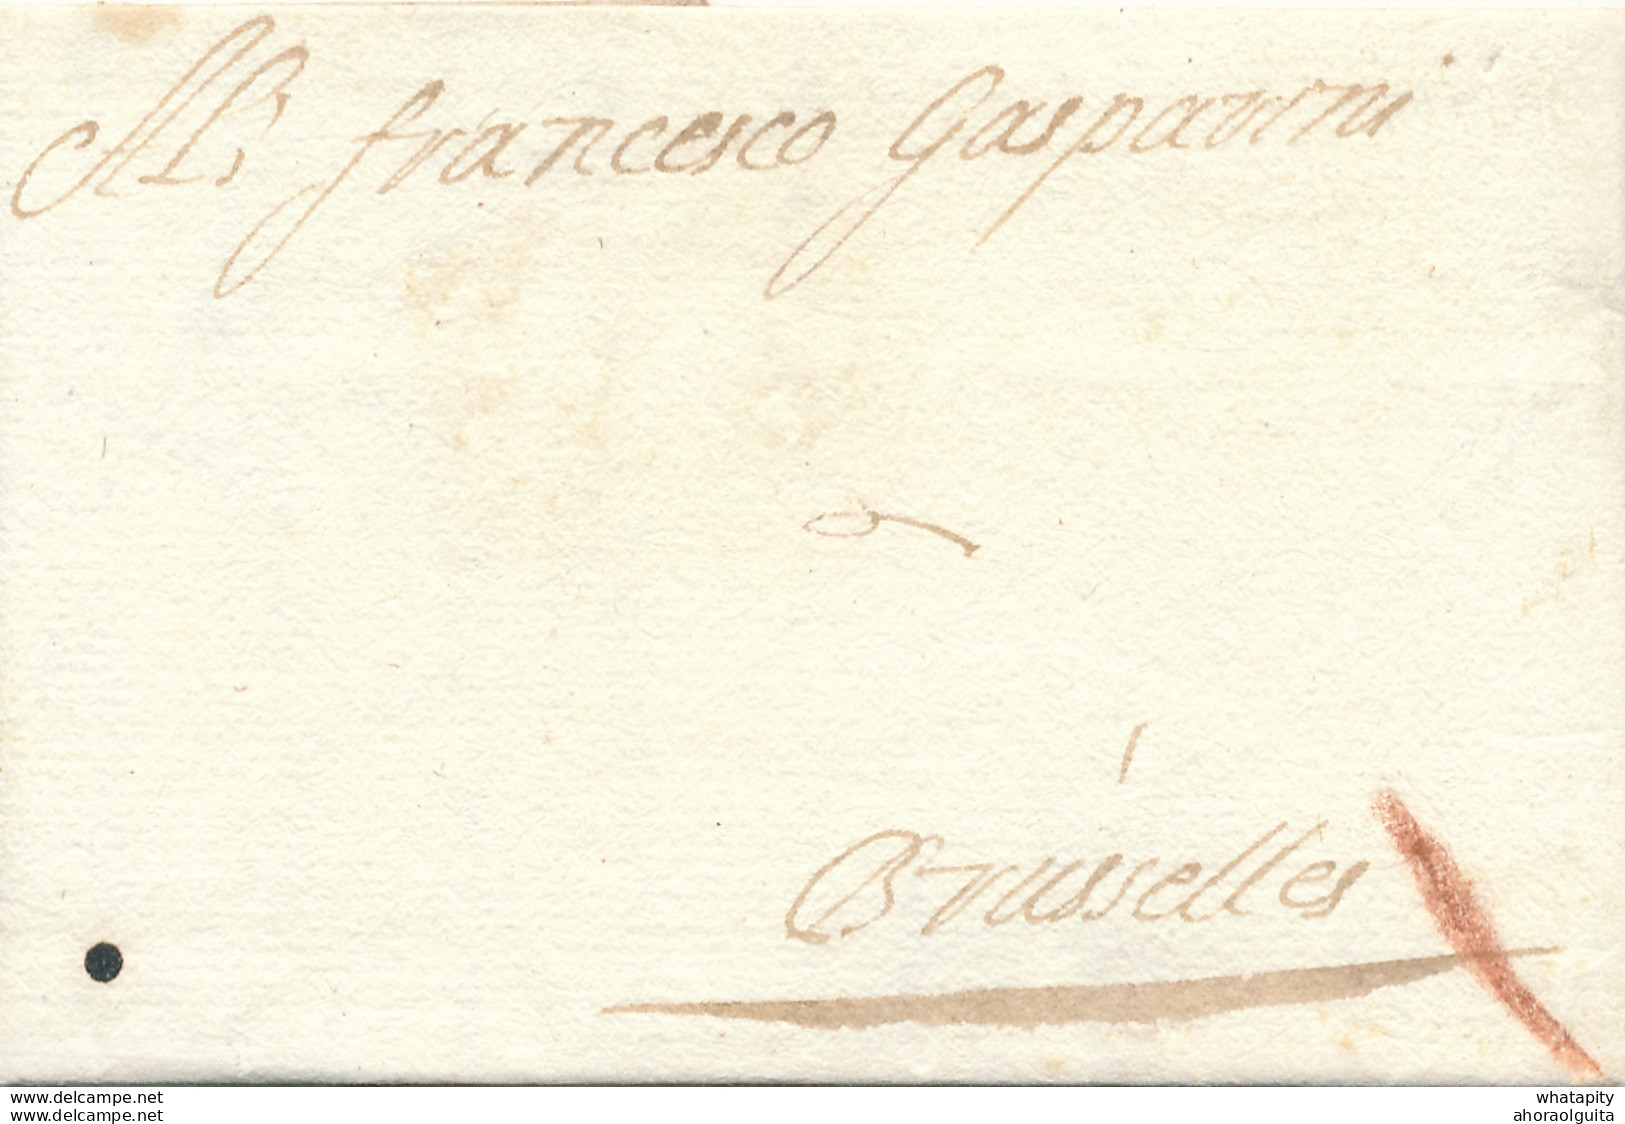 759/29 - Lettre Précurseur 1700 ANTWERPEN Vers BRUXELLES - Marque Oblique à La Craie ( Transport Par Messager ) - 1621-1713 (Pays-Bas Espagnols)